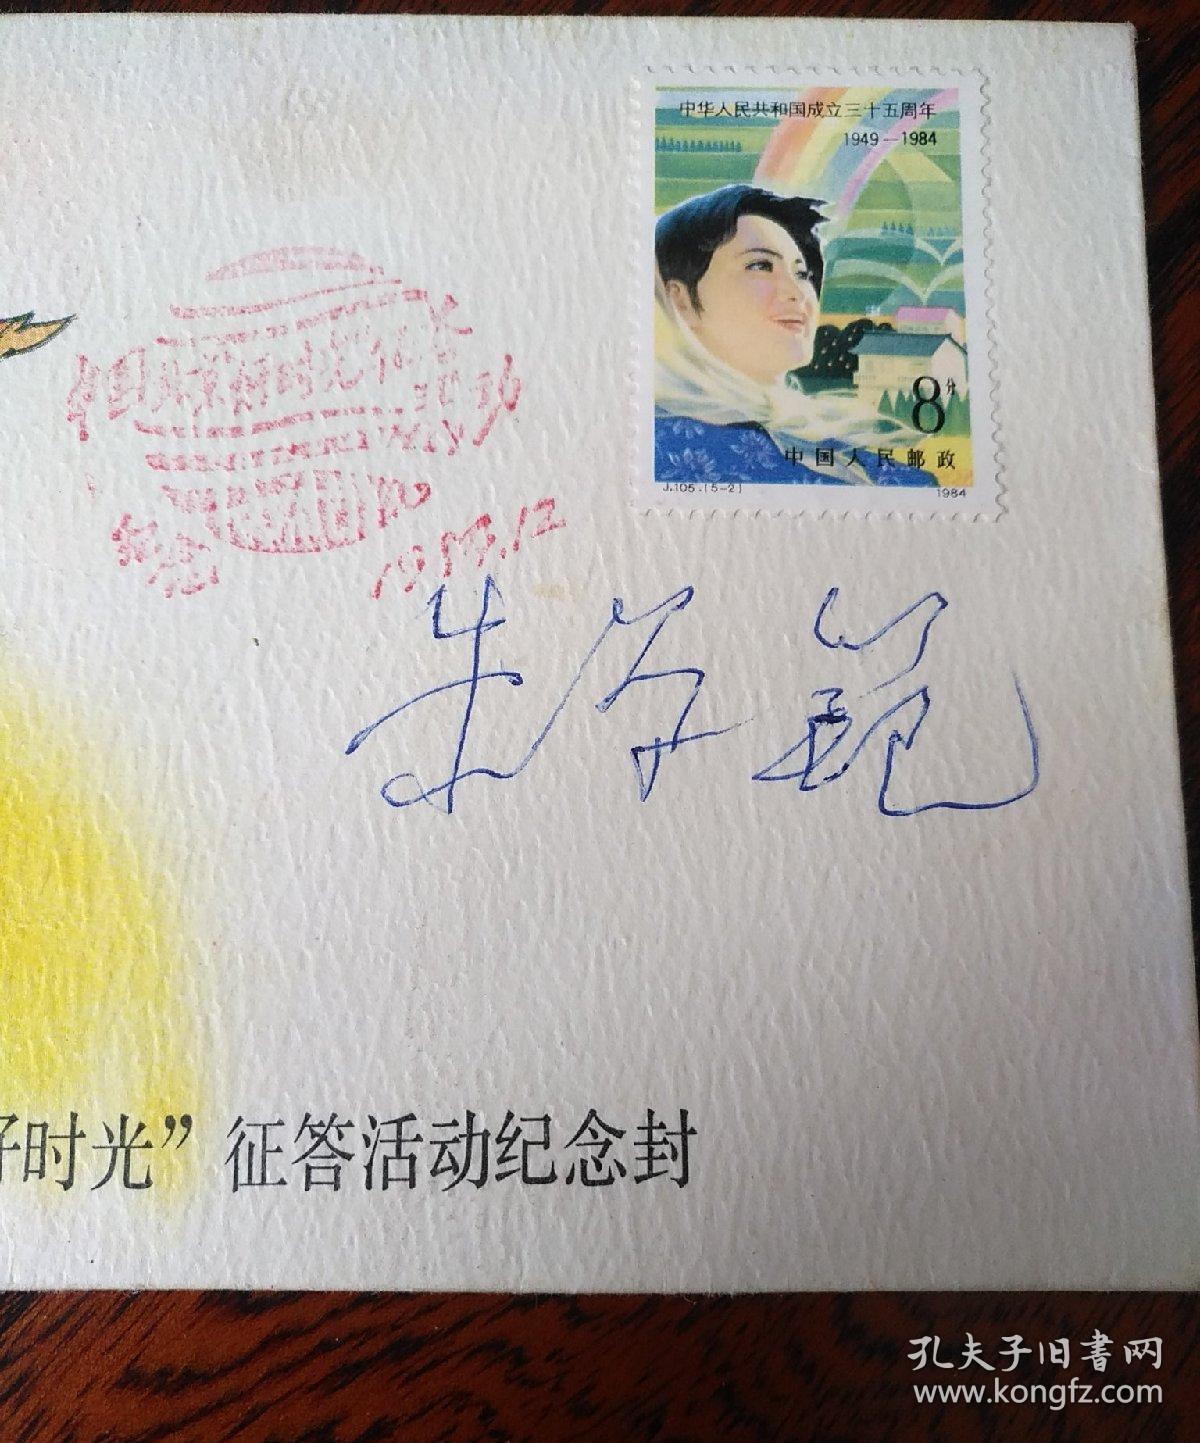 中国青年杂志好时光征答活动黄里 朱学范签名纪念封